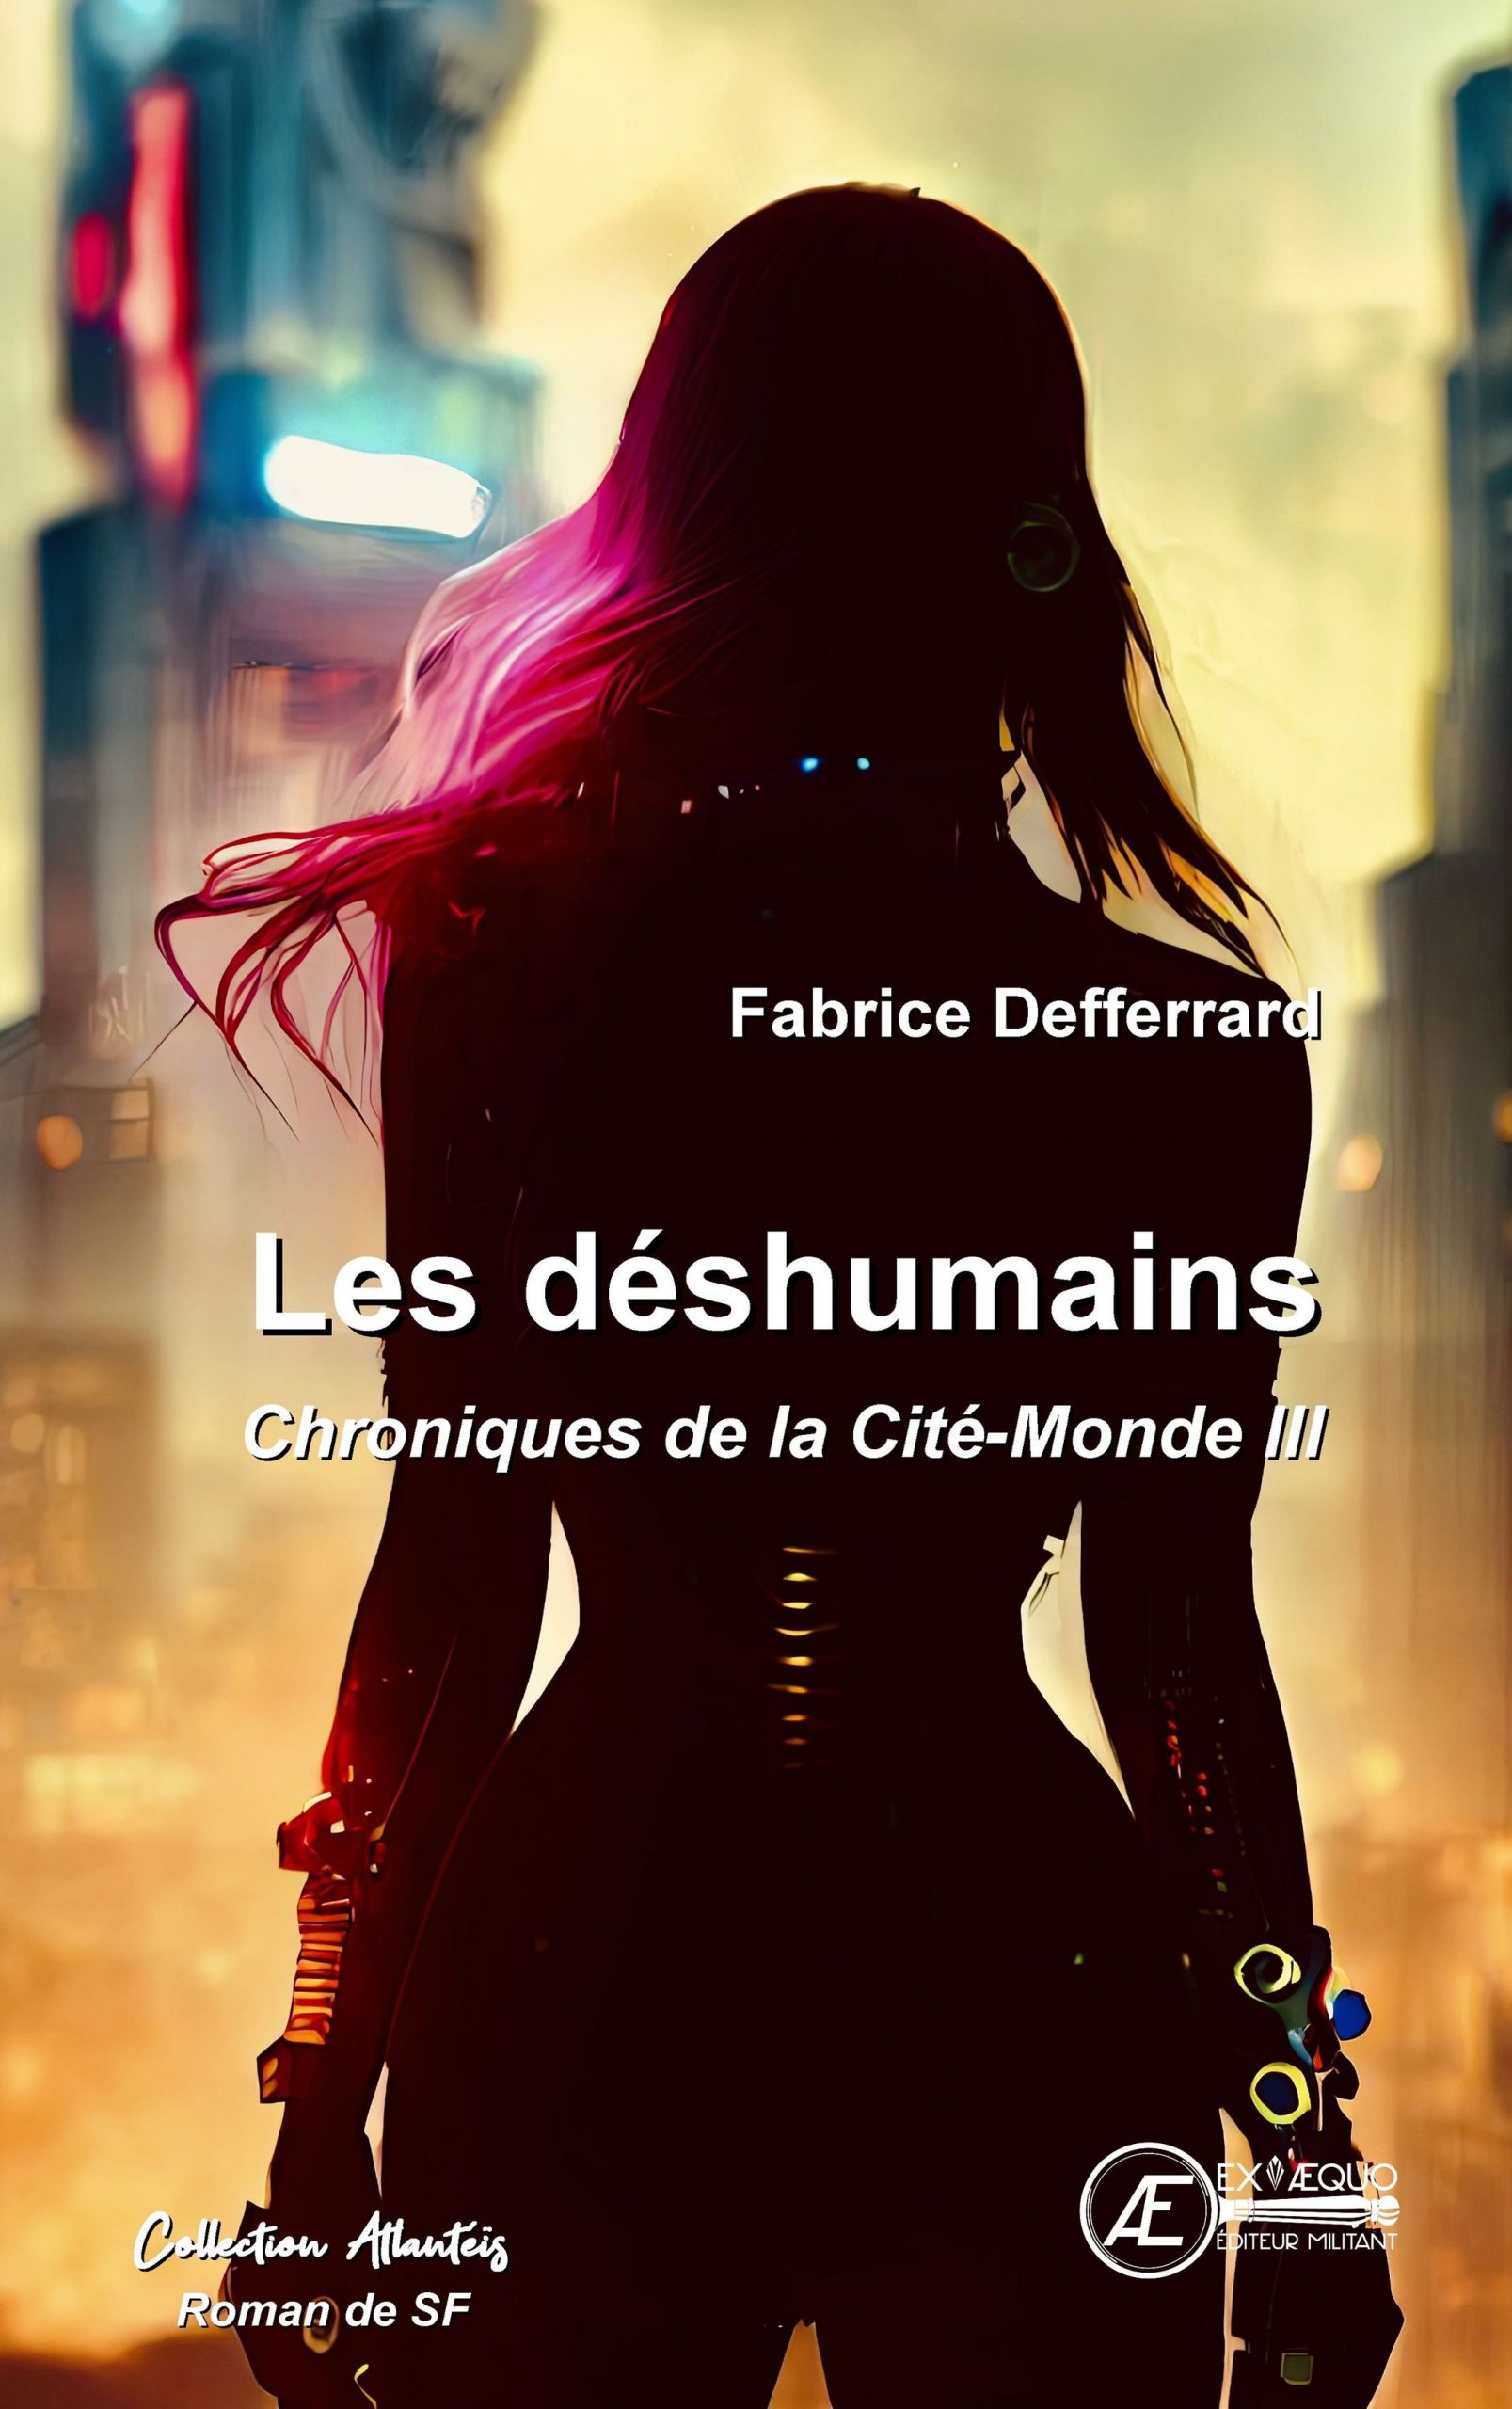 You are currently viewing Les déshumains – Chroniques de la Cité-Monde III